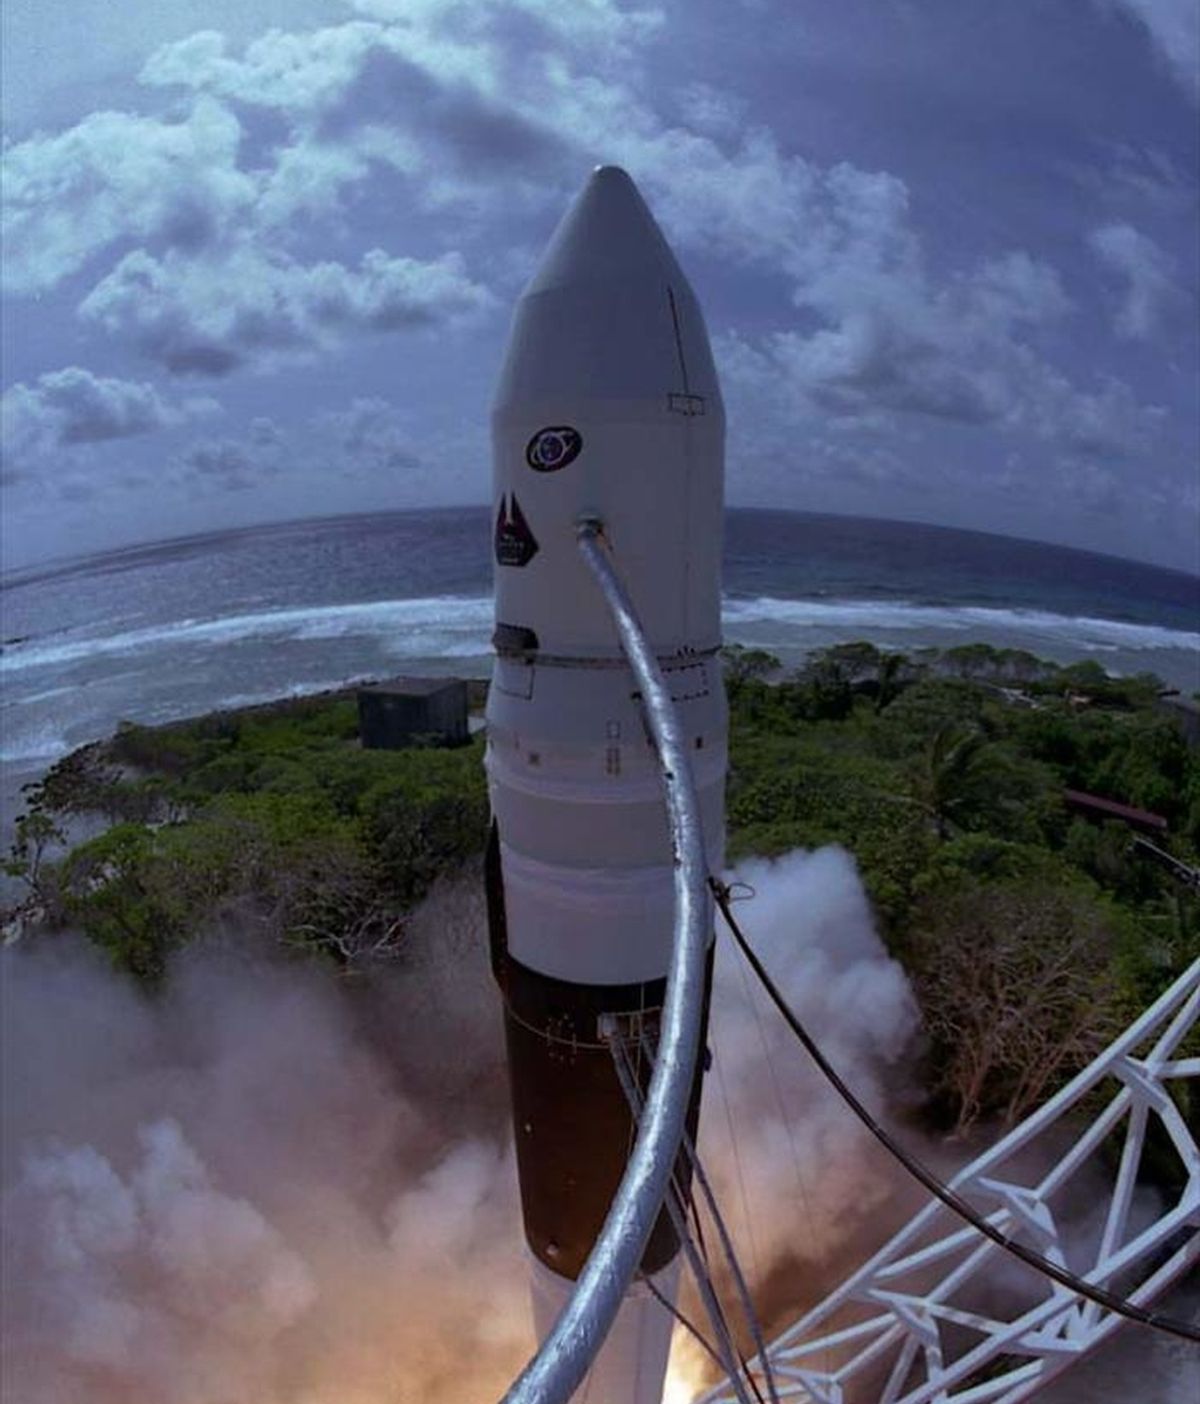 "Falcon Heavy transportará más carga en la órbita o más rápido que cualquier vehículo en la historia, excepto el cohete lunar Saturno V", indicó el consejero delegado de SpaceX, Elon Musk. En la imagen, uno de los cohetes de la compañía SpaceX. EFE/Archivo